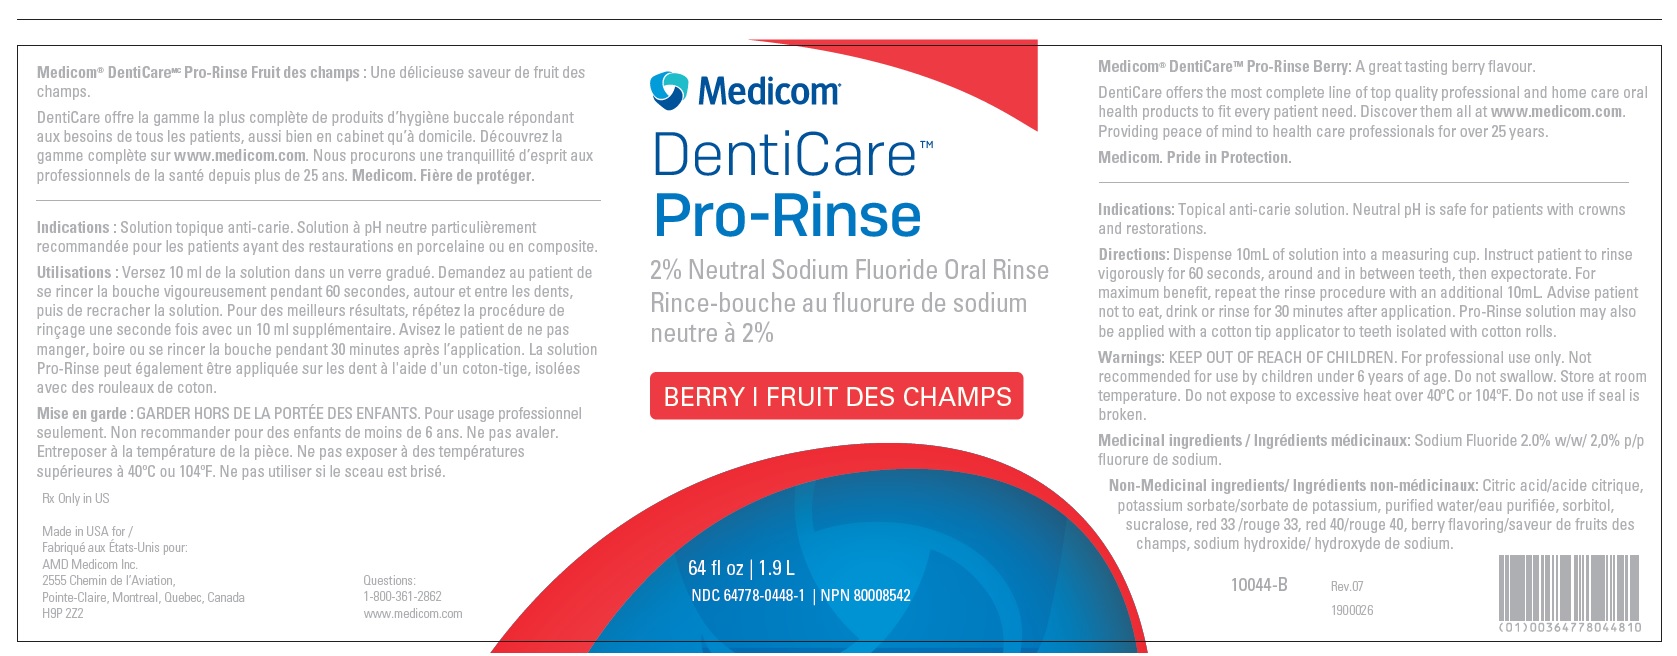 DentiCare Pro-Rinse 2% Neutral Sodium Fluoride Oral Rinse